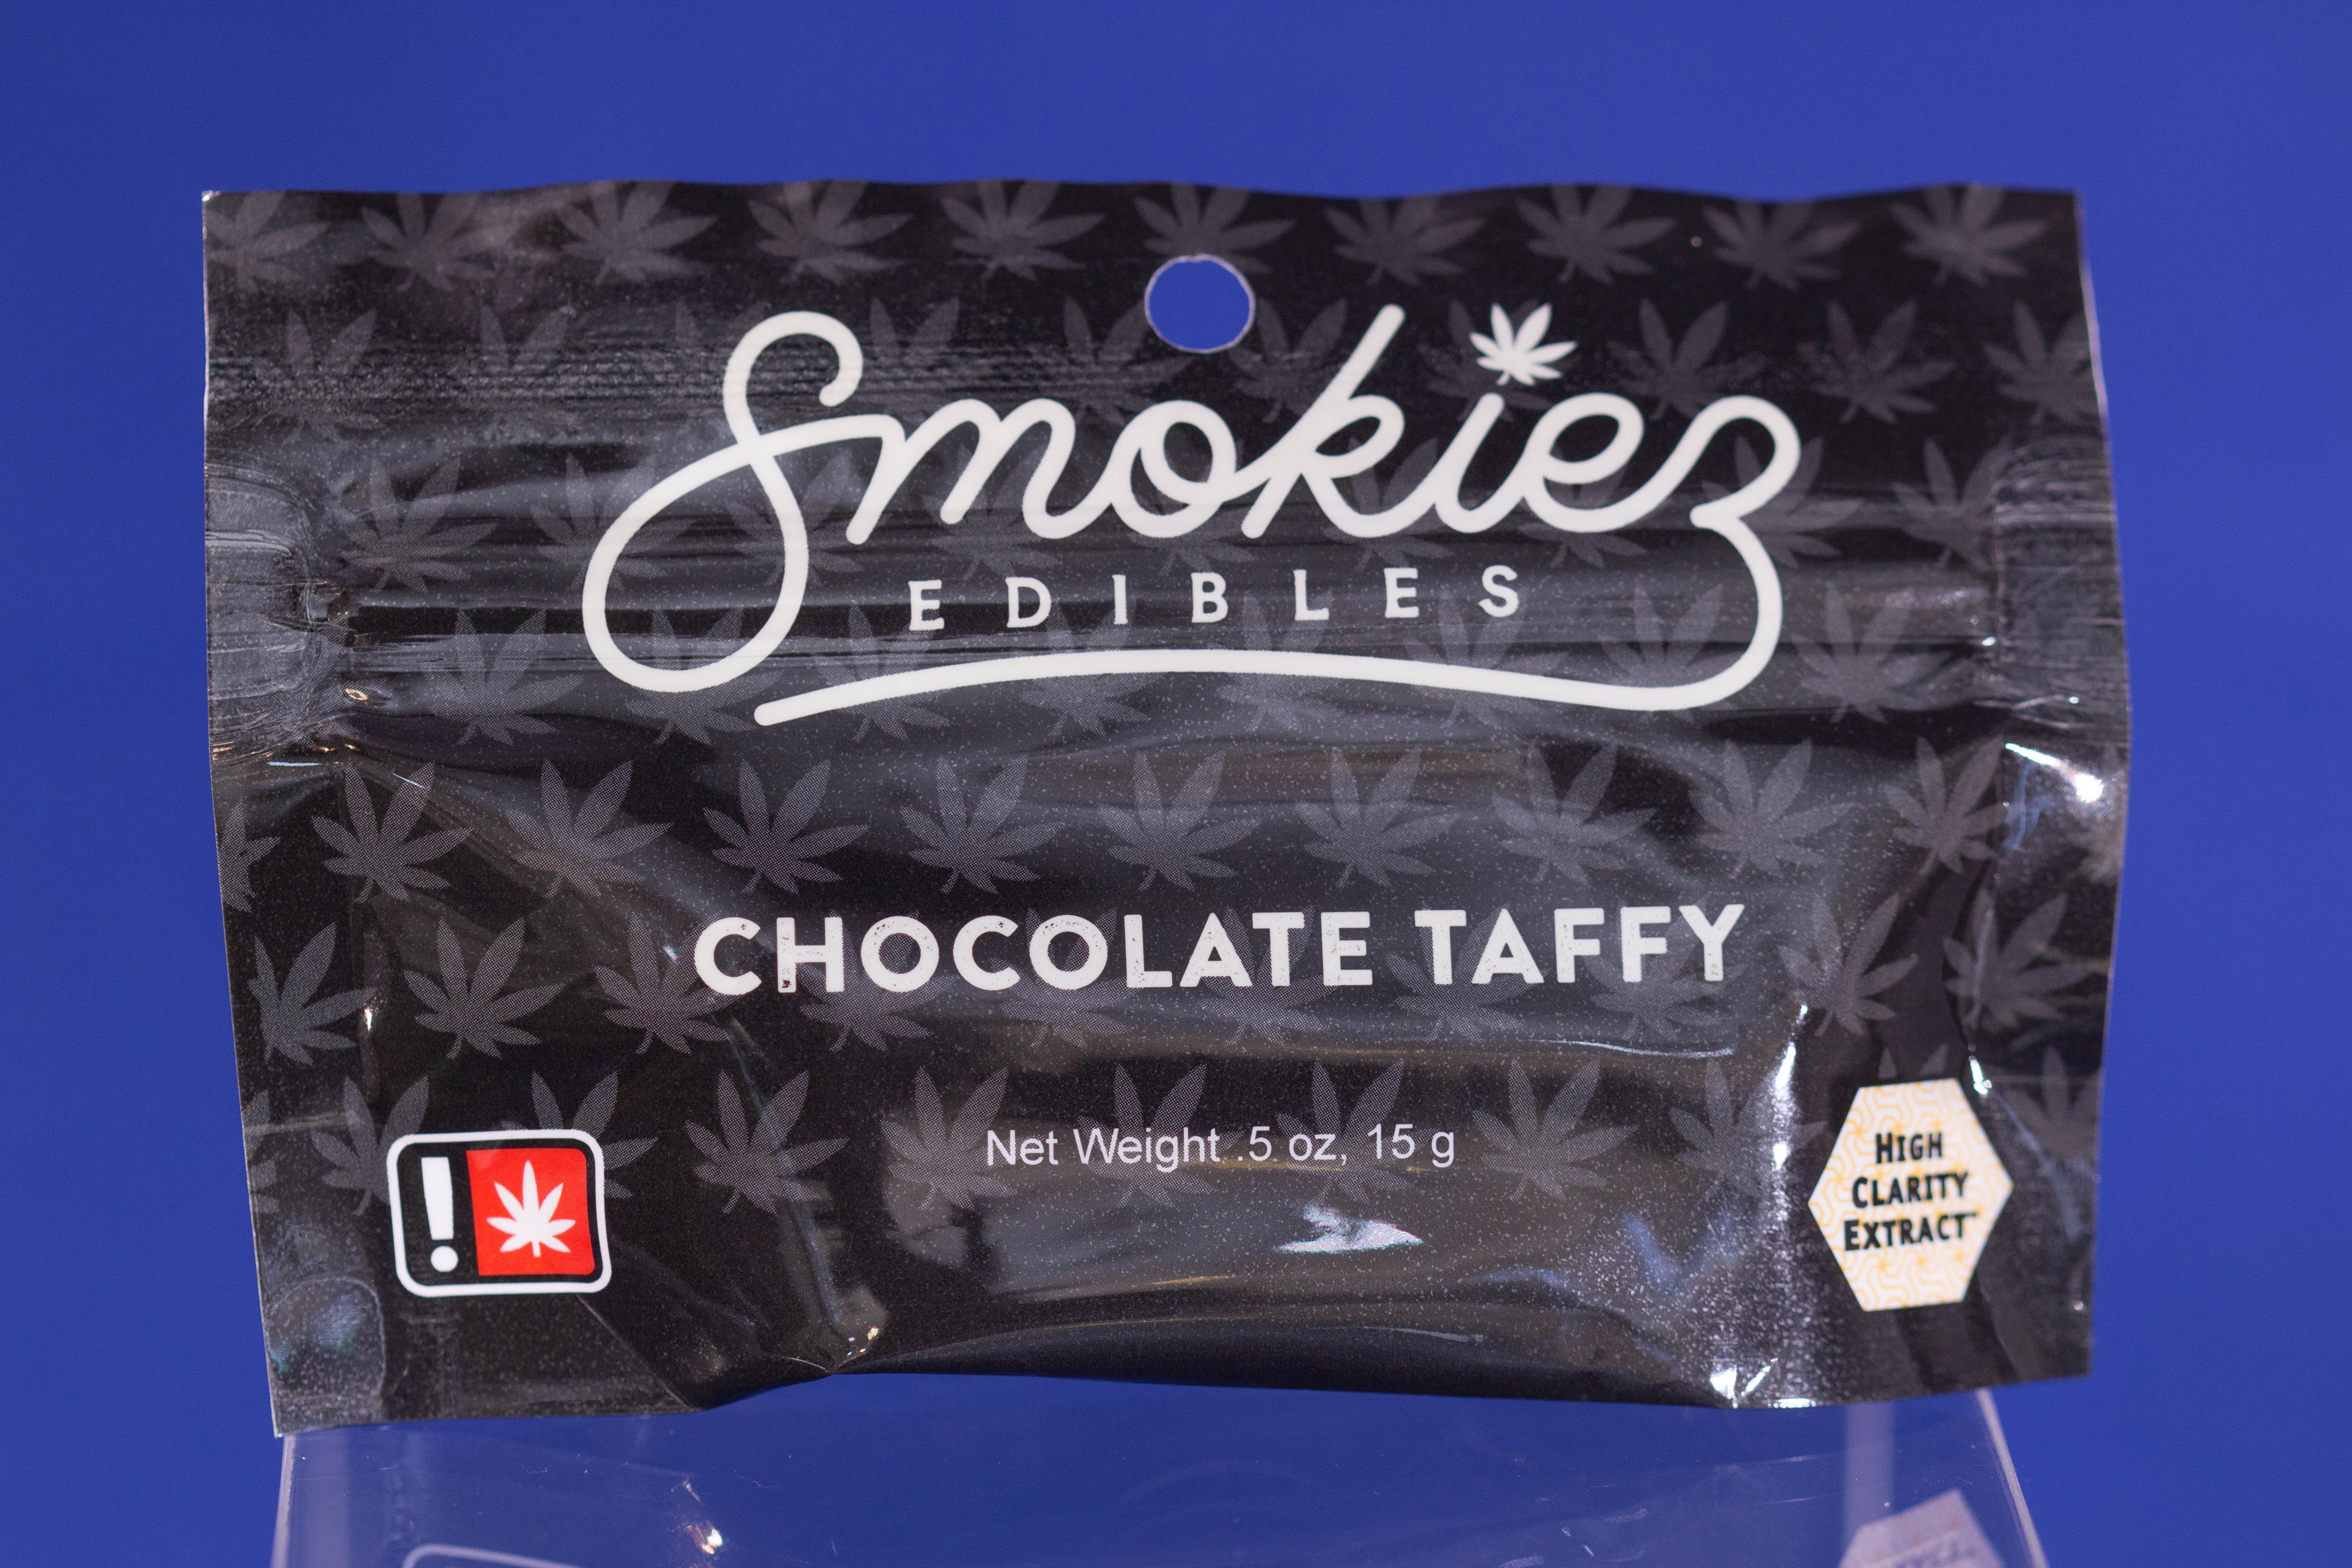 edible-chocolate-taffy-by-smokiez